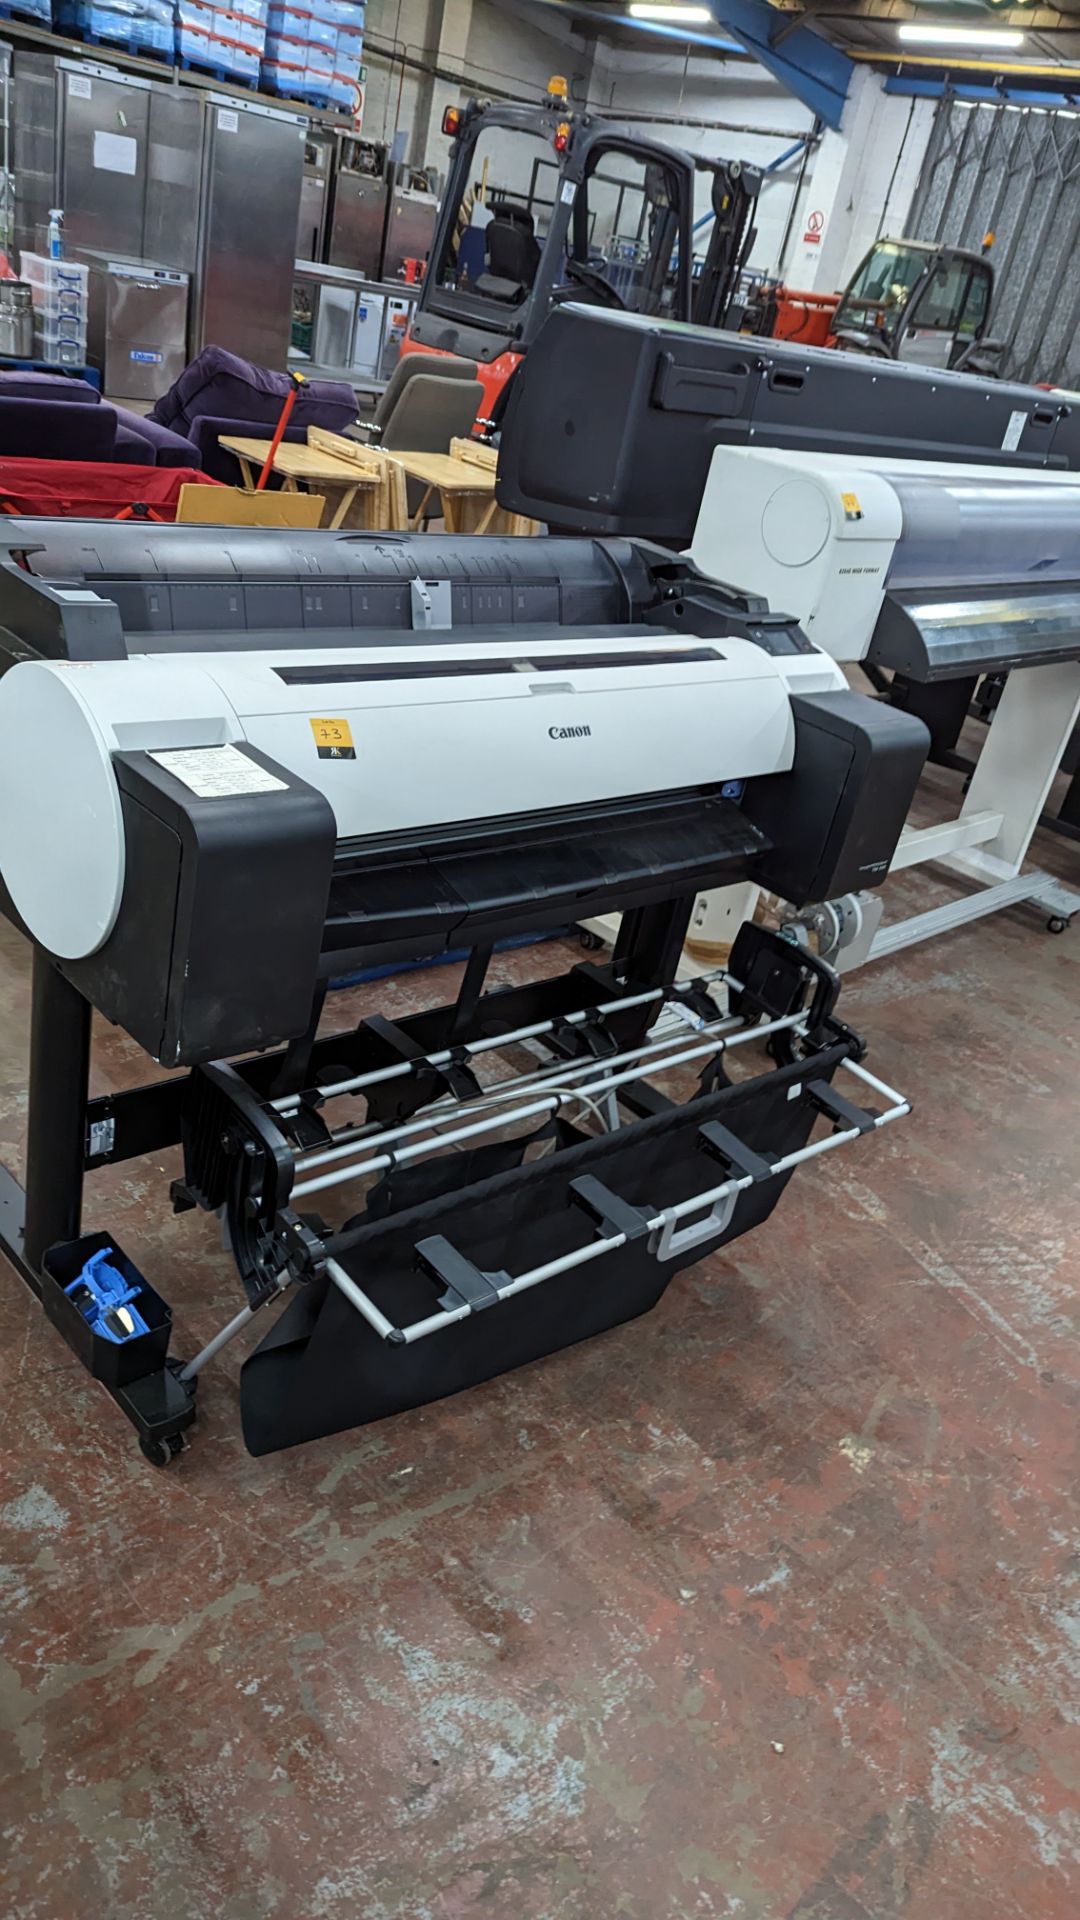 Canon wide format printer model ImagePROGRAF TM-300 - Image 3 of 25